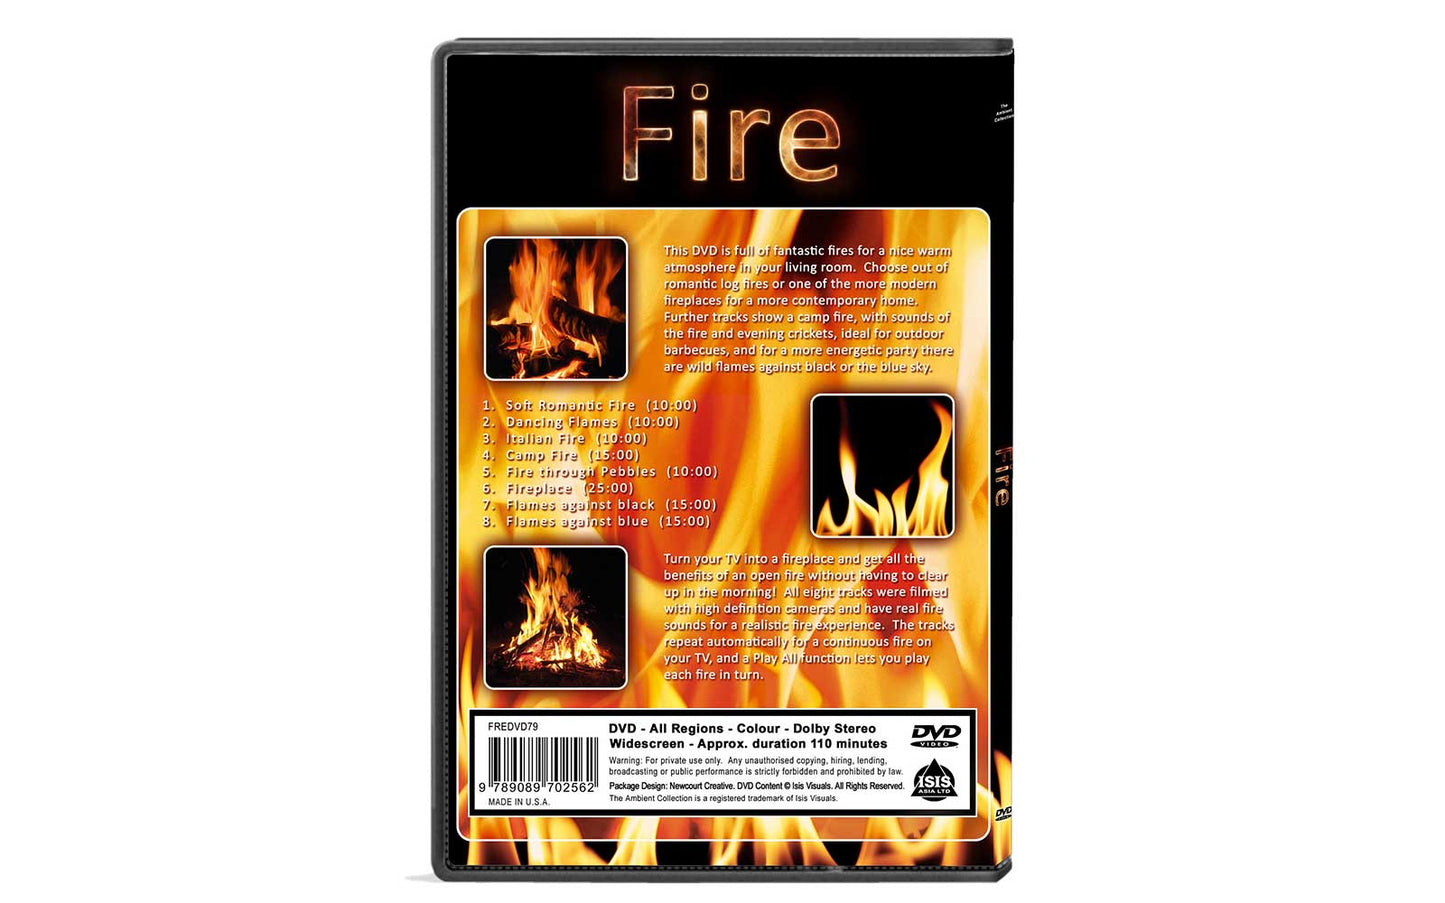 Fire Dvd